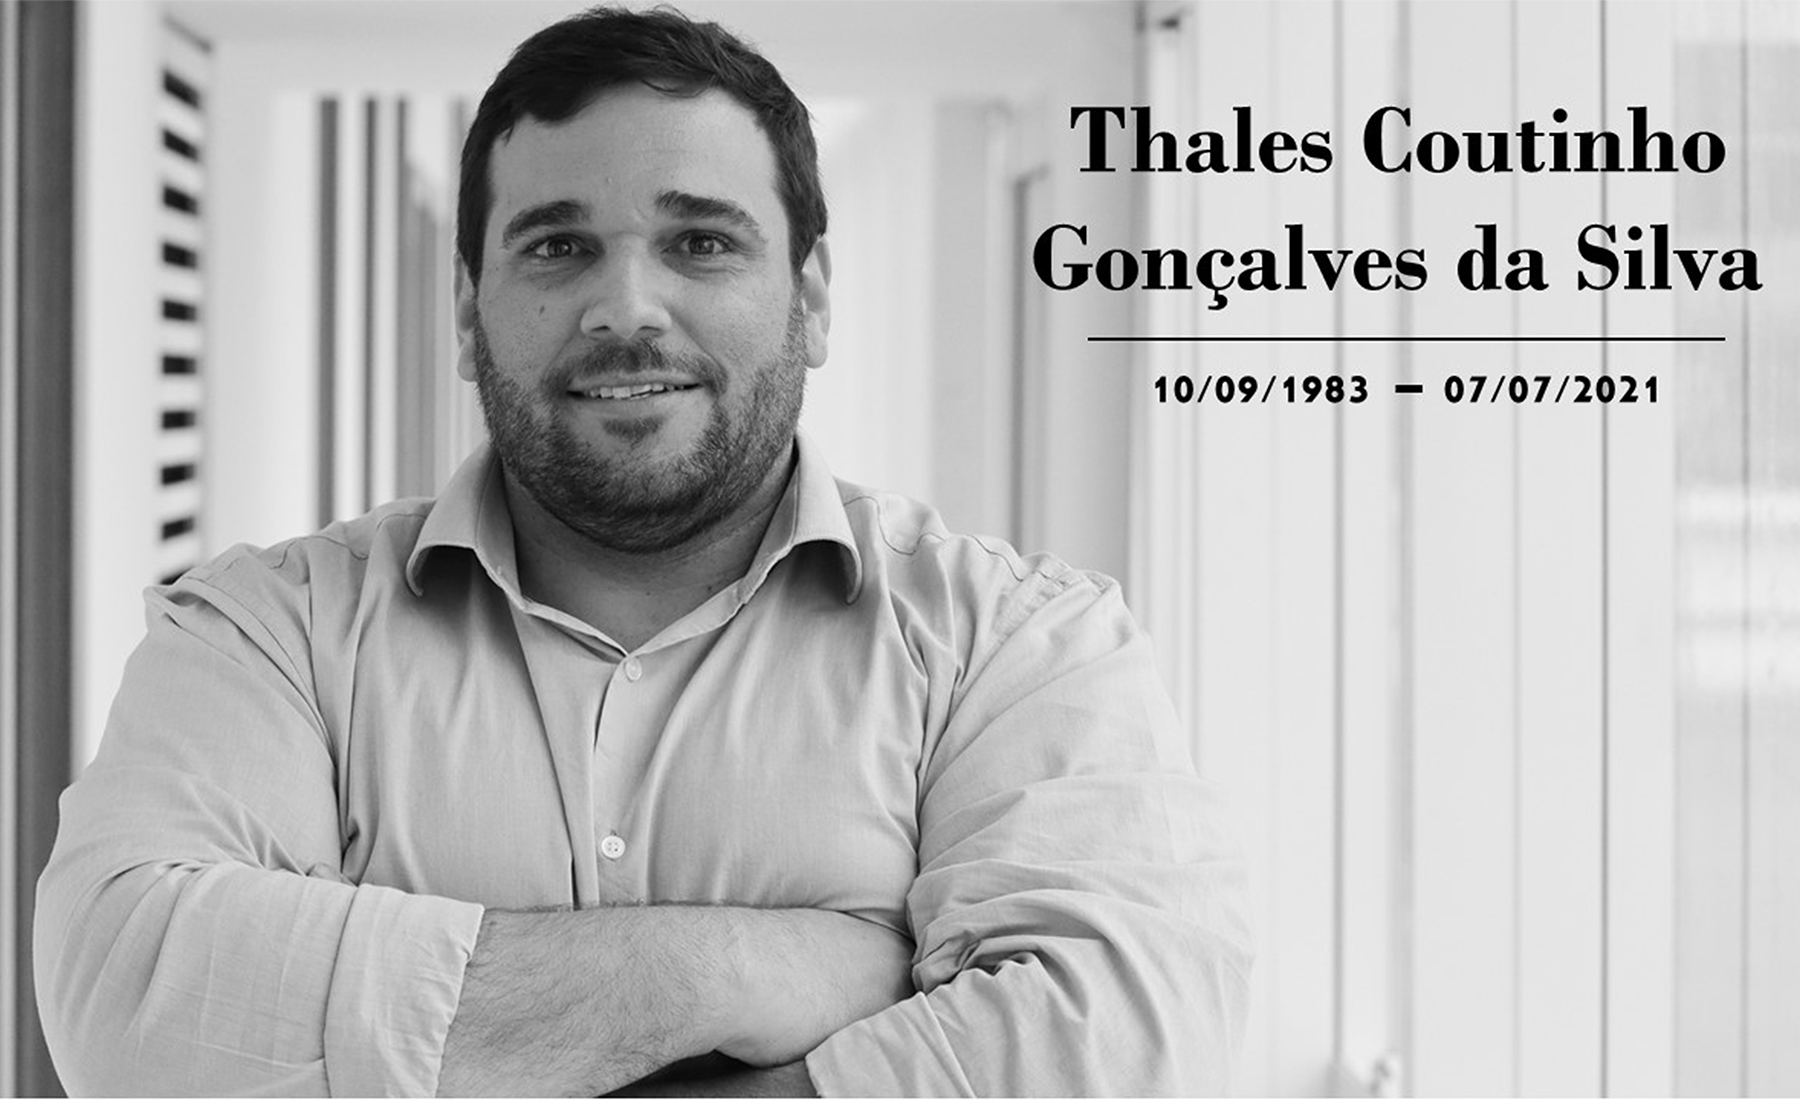 Vereador Thales Coutinho foi homenageado durante sessão desta terça-feira